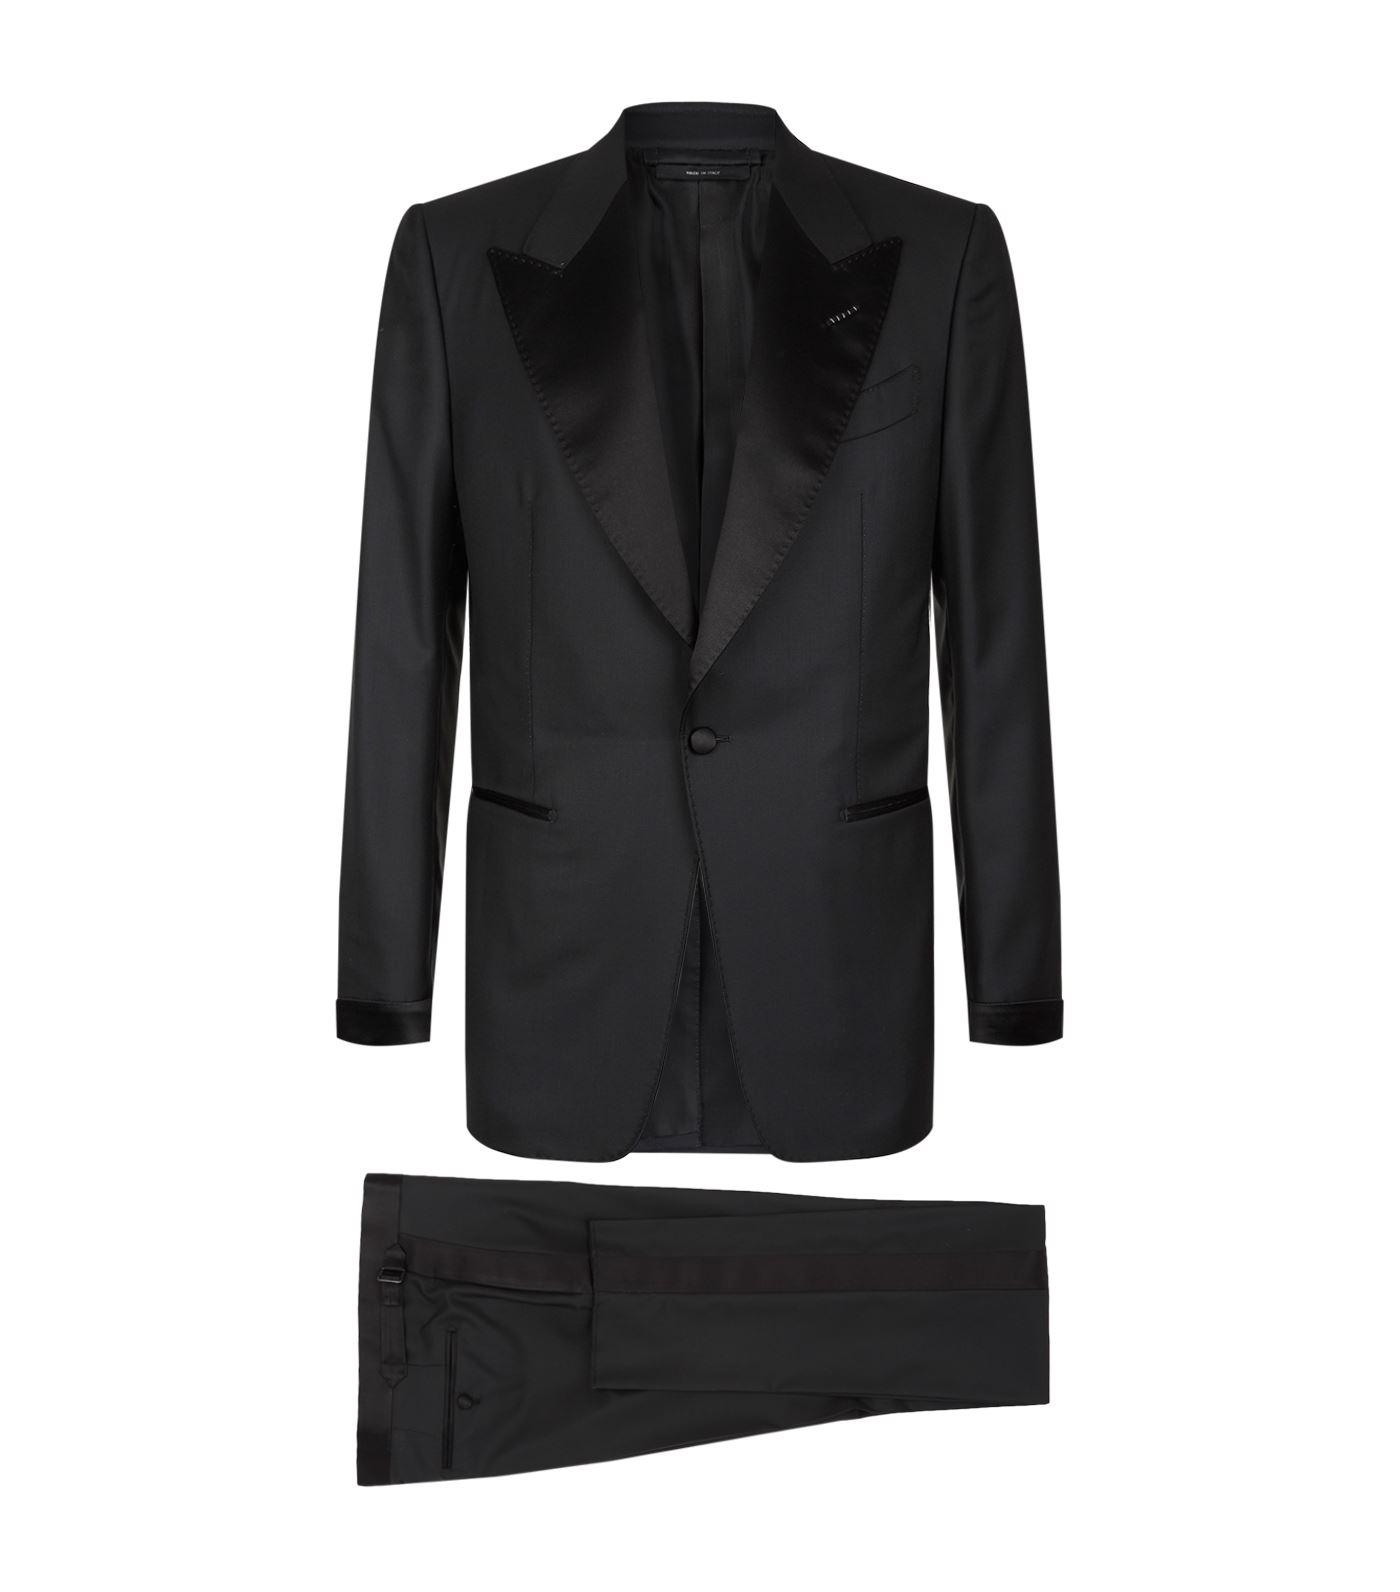 Tom Ford Satin Shelton Peak Lapel Tuxedo in Black for Men - Lyst